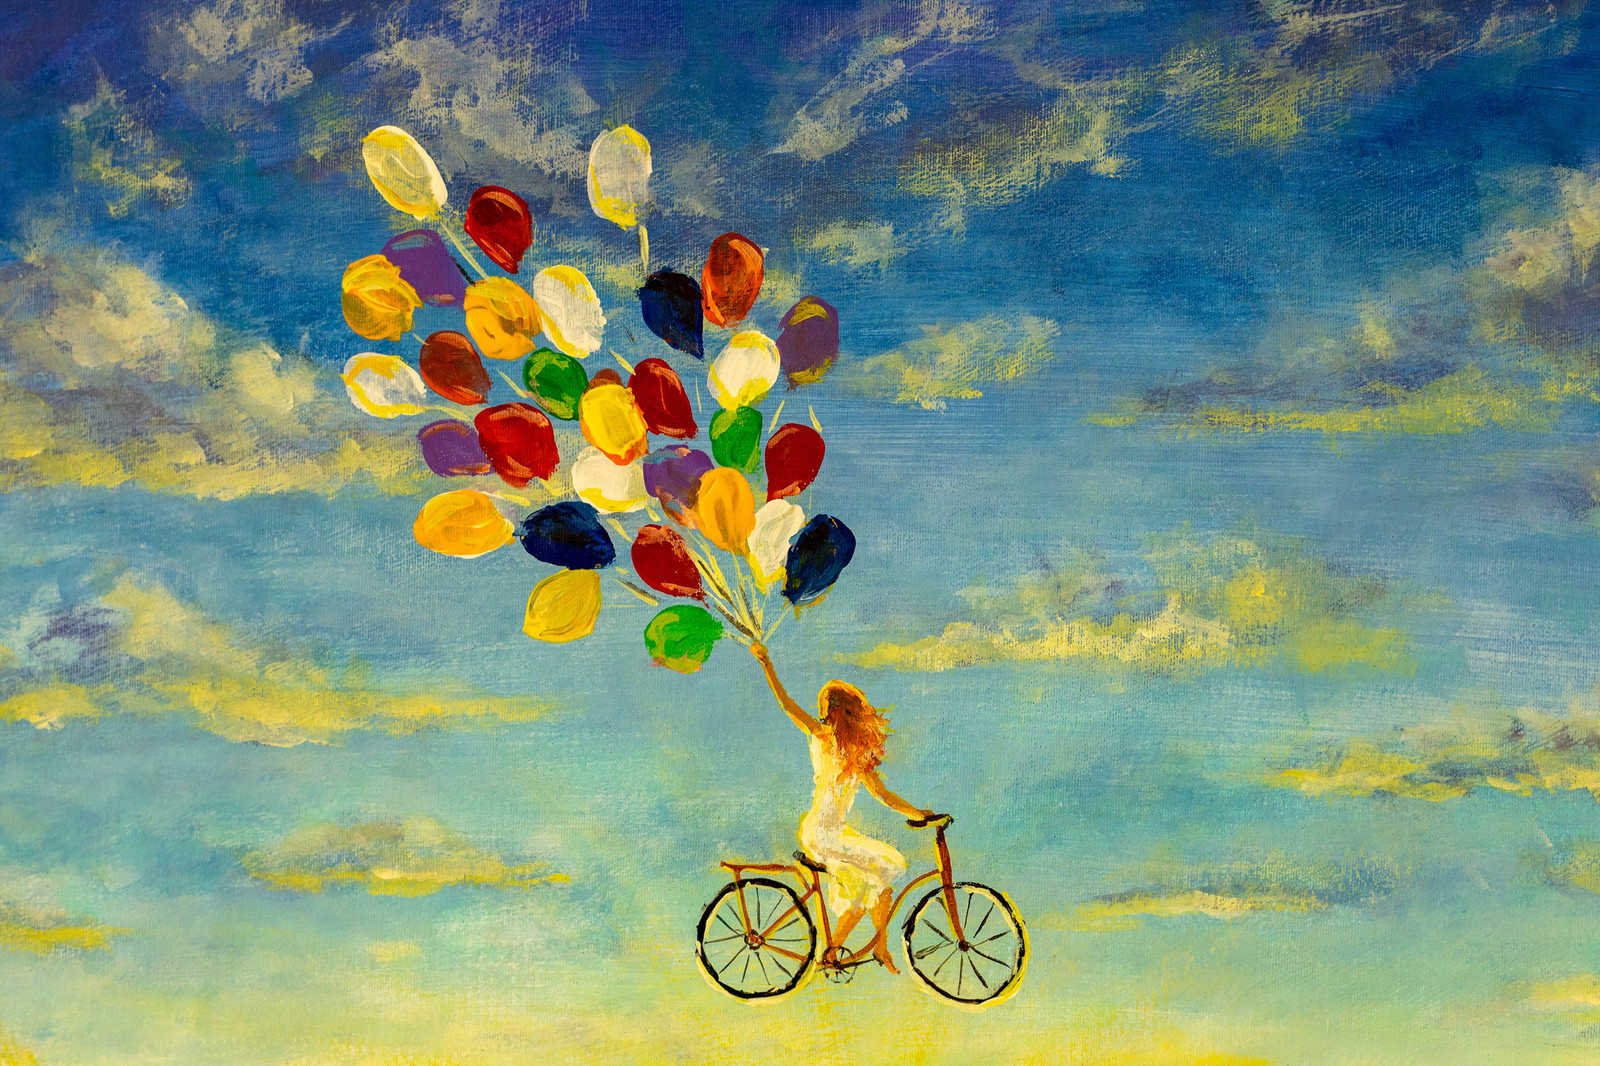             Leinwandbild mit Frau auf Fahrrad im Himmel Gemälde – 0,90 m x 0,60 m
        